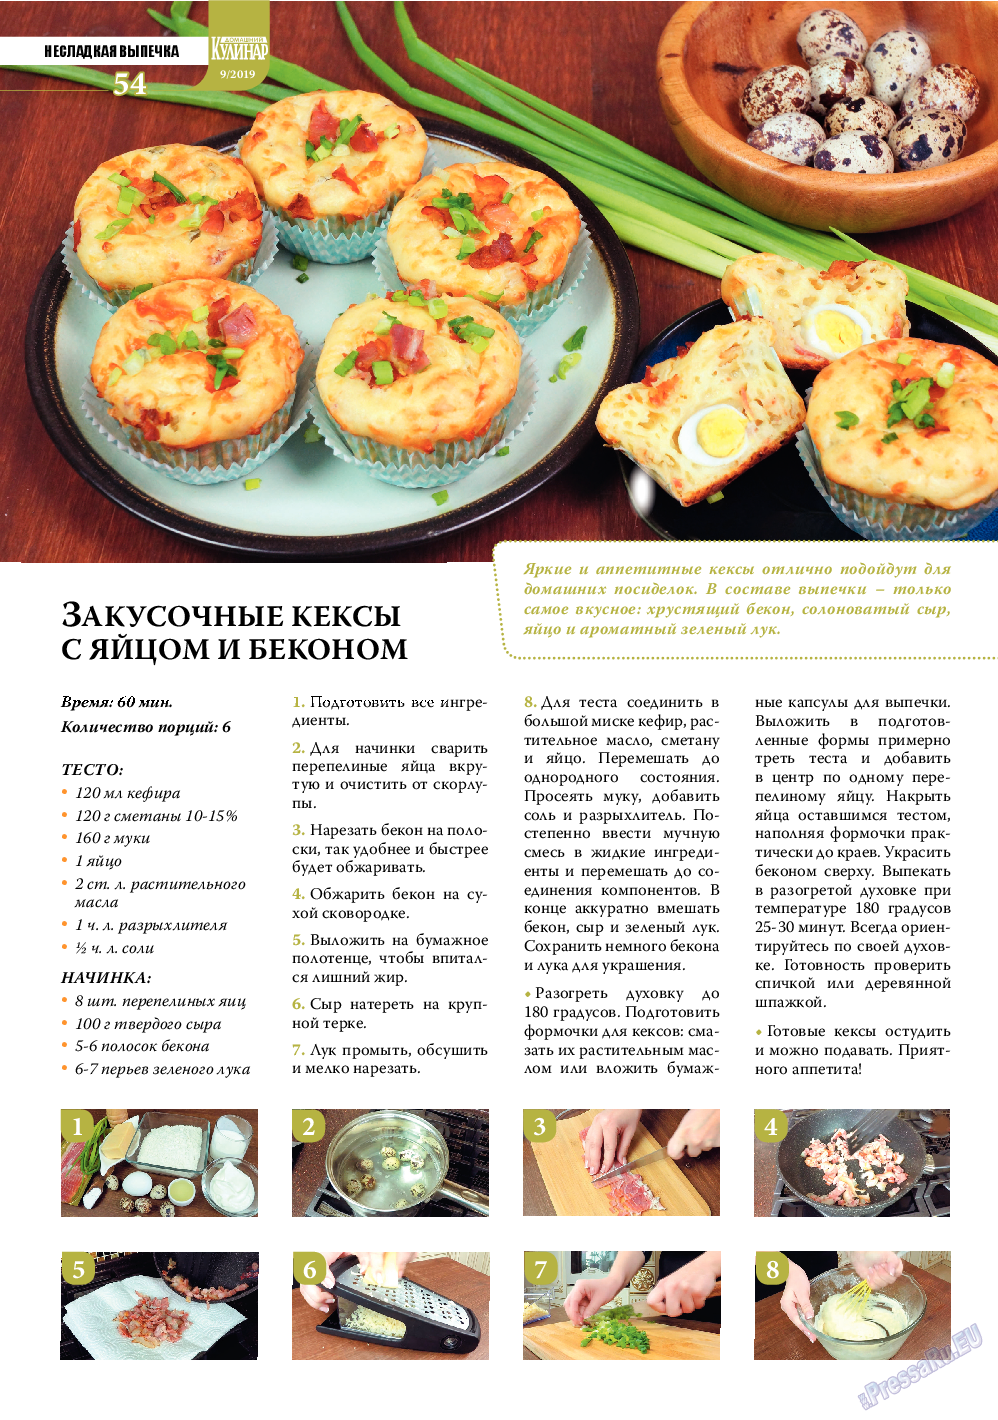 Домашний кулинар, журнал. 2019 №9 стр.54